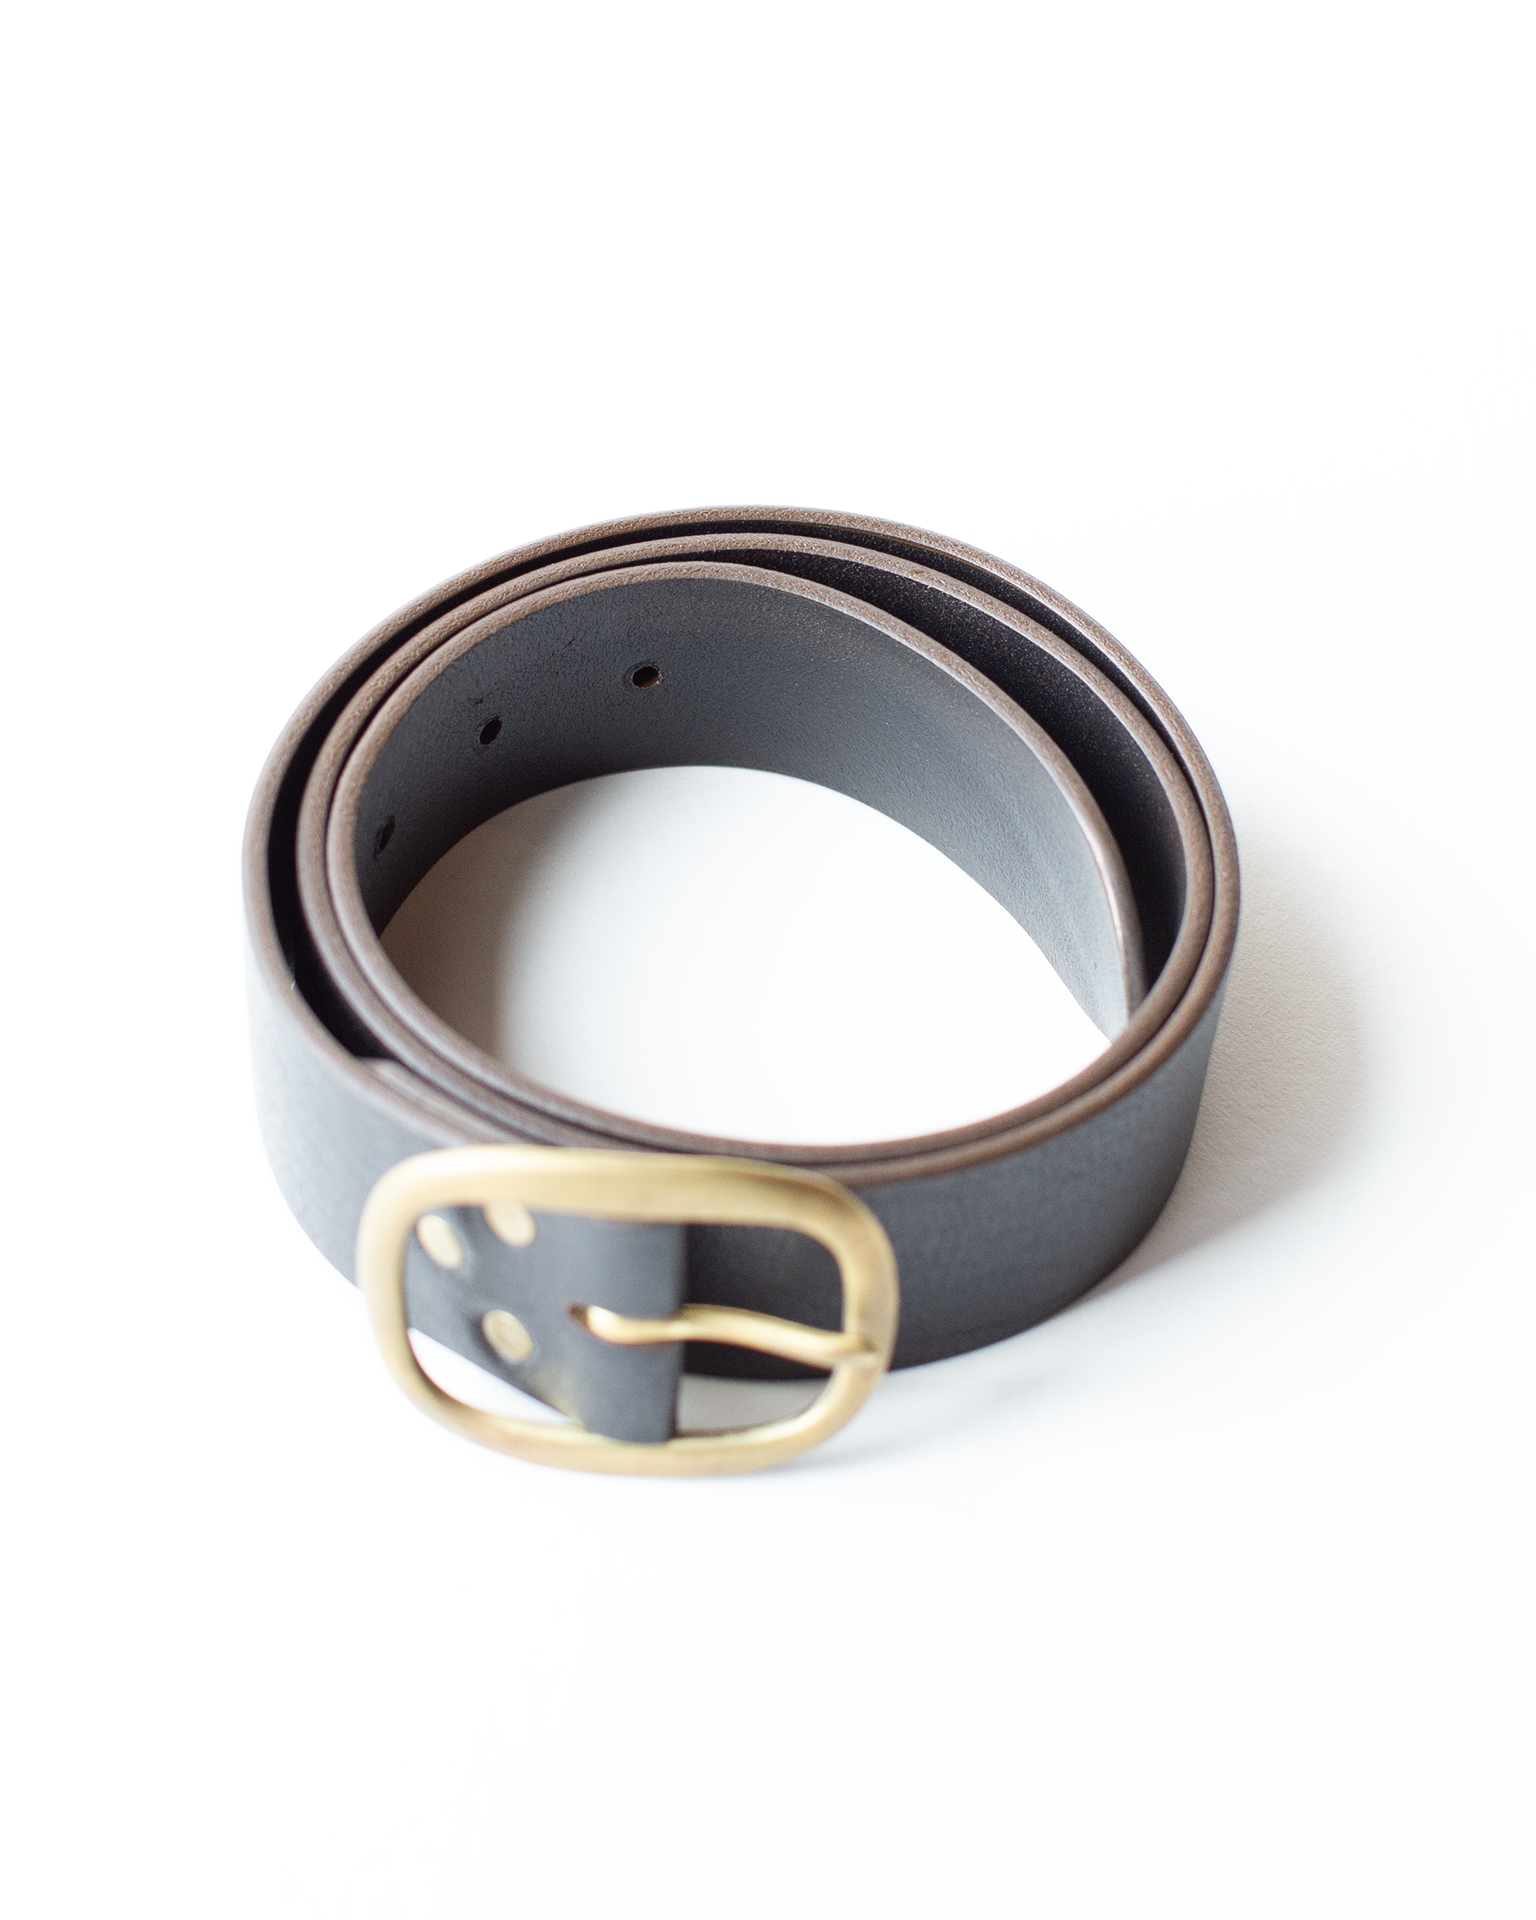 Depalma Handsewn Clasico Belt 1.5 w/o Rivets in Black w/ Brass